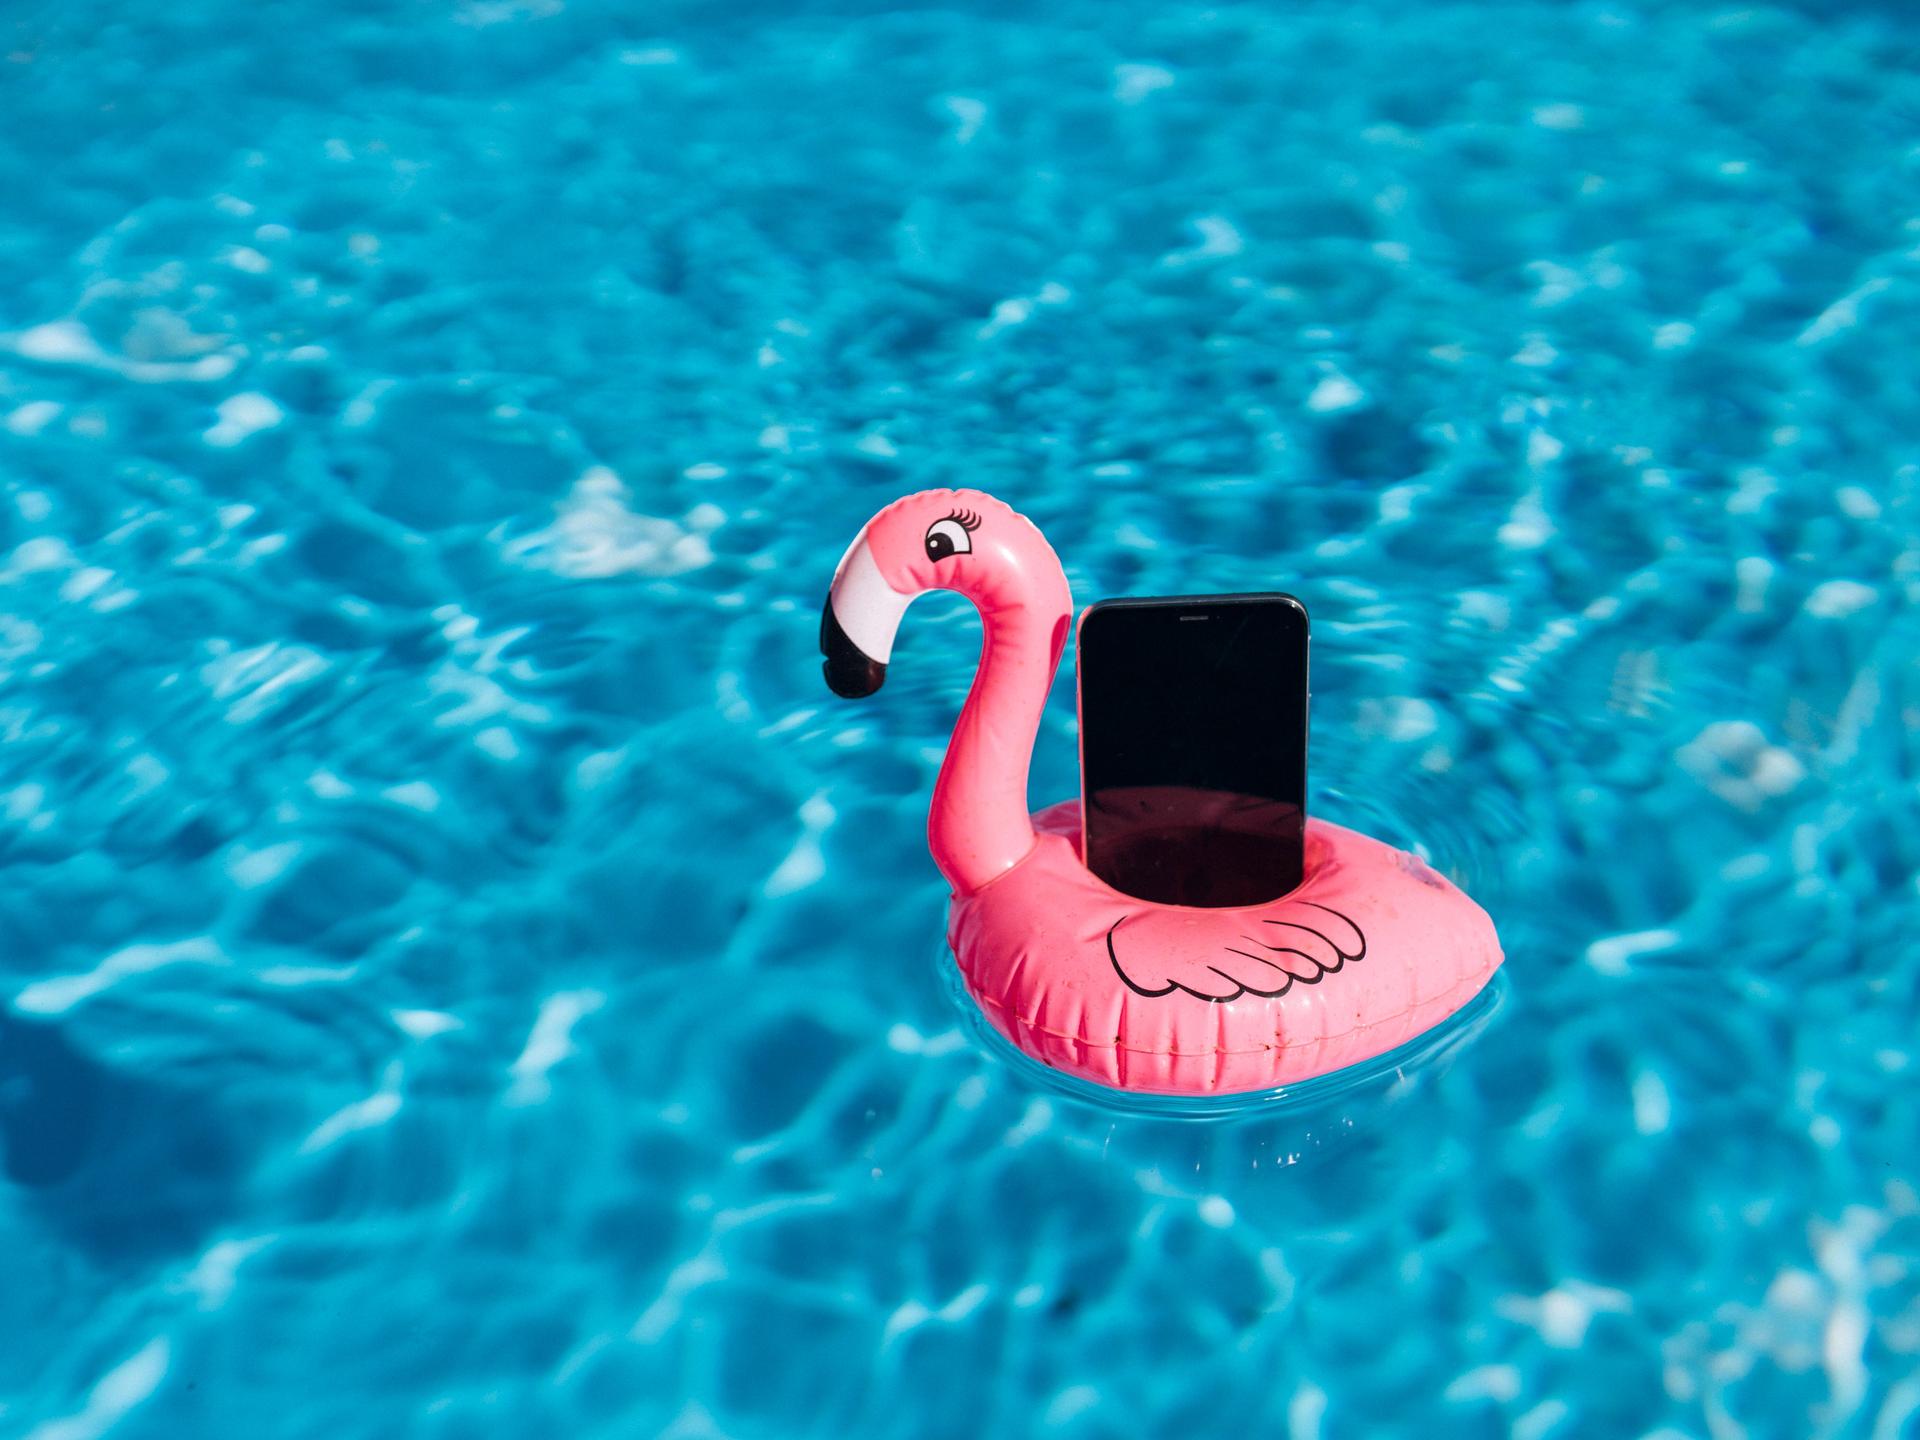 Ein Smartphone auf einem Gummi-Flamingo in einem Pool.